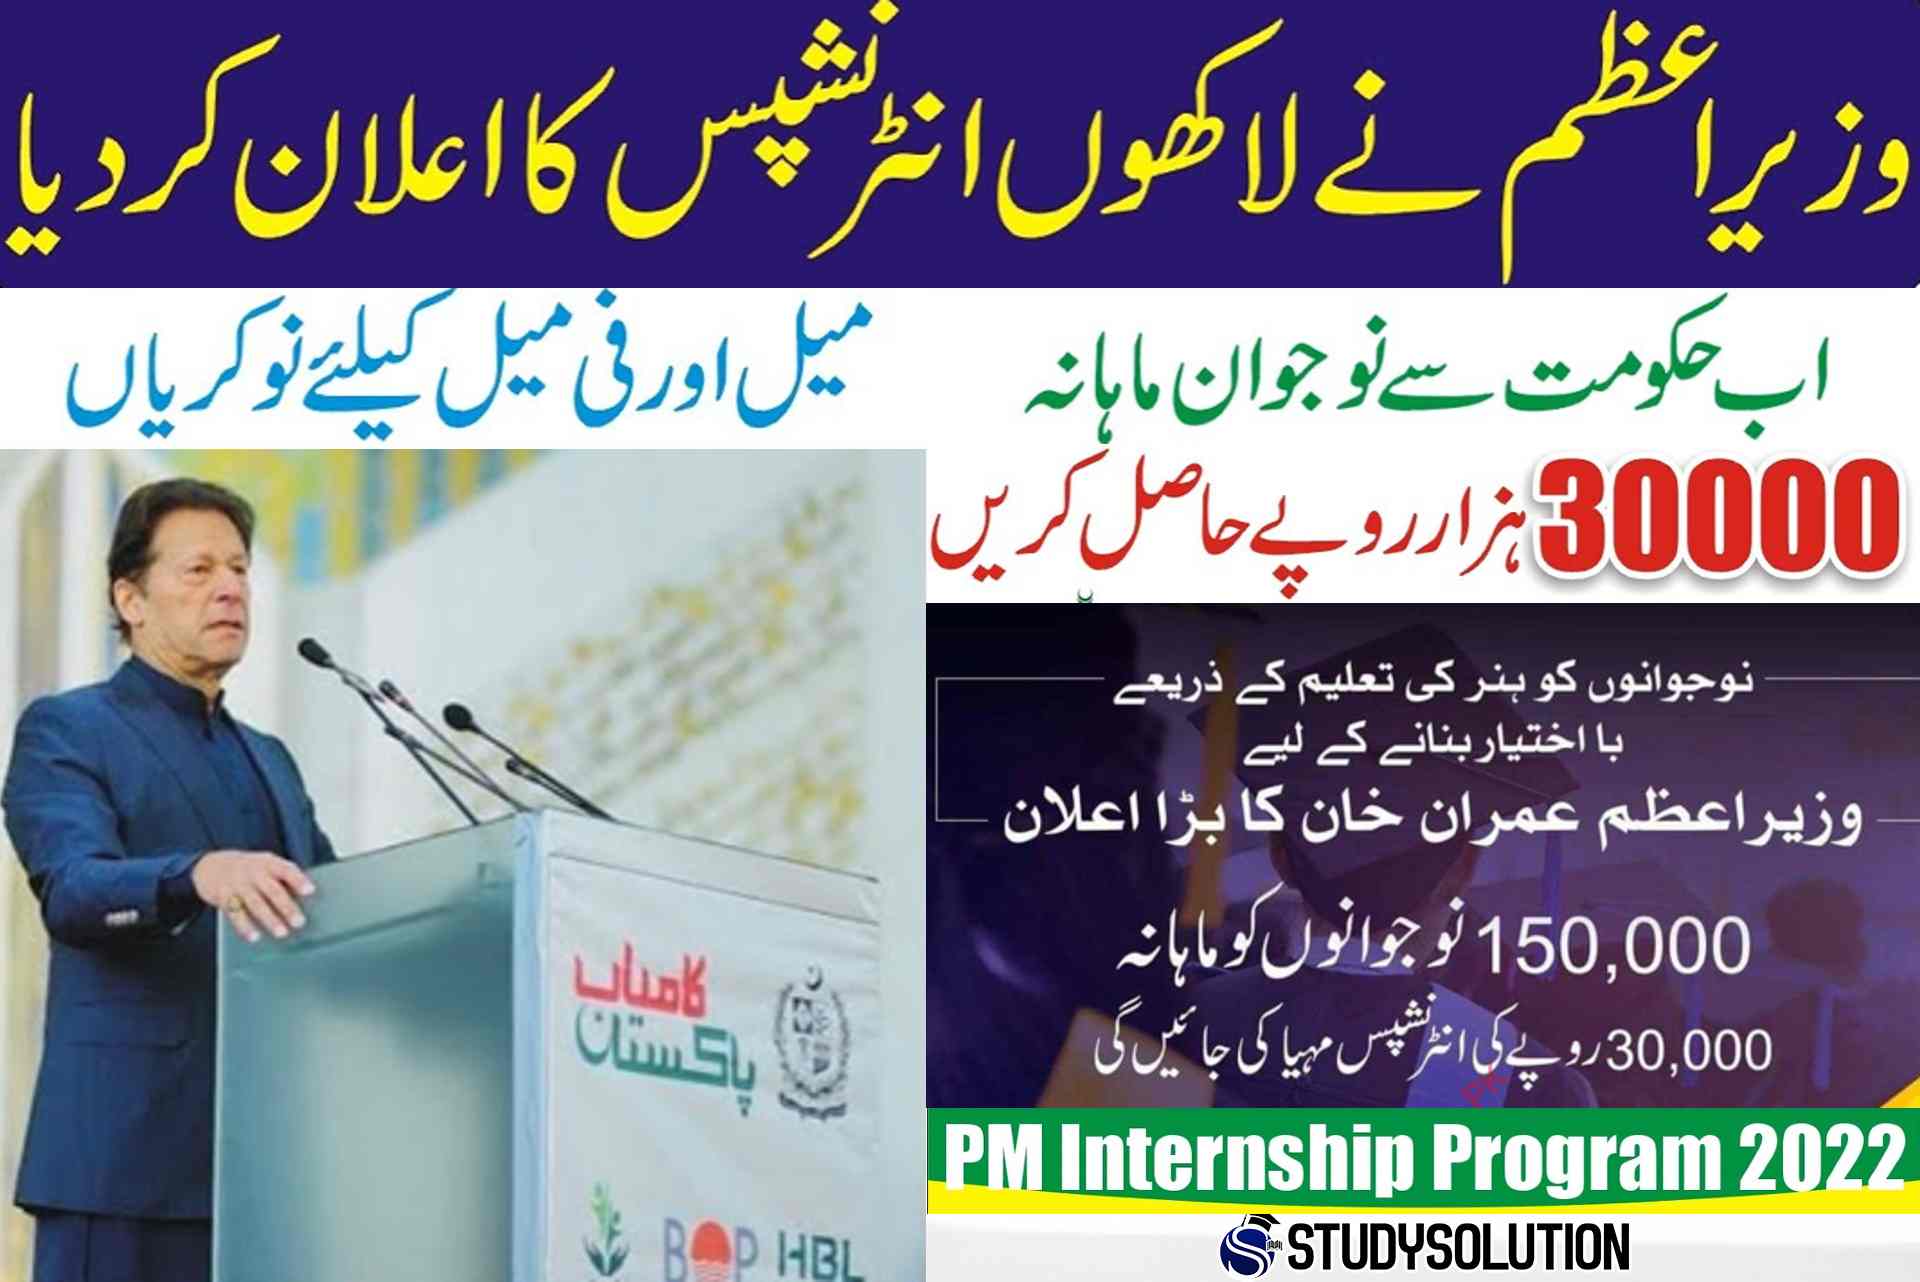 Prime Minister Kamyab Jawan Internship Program